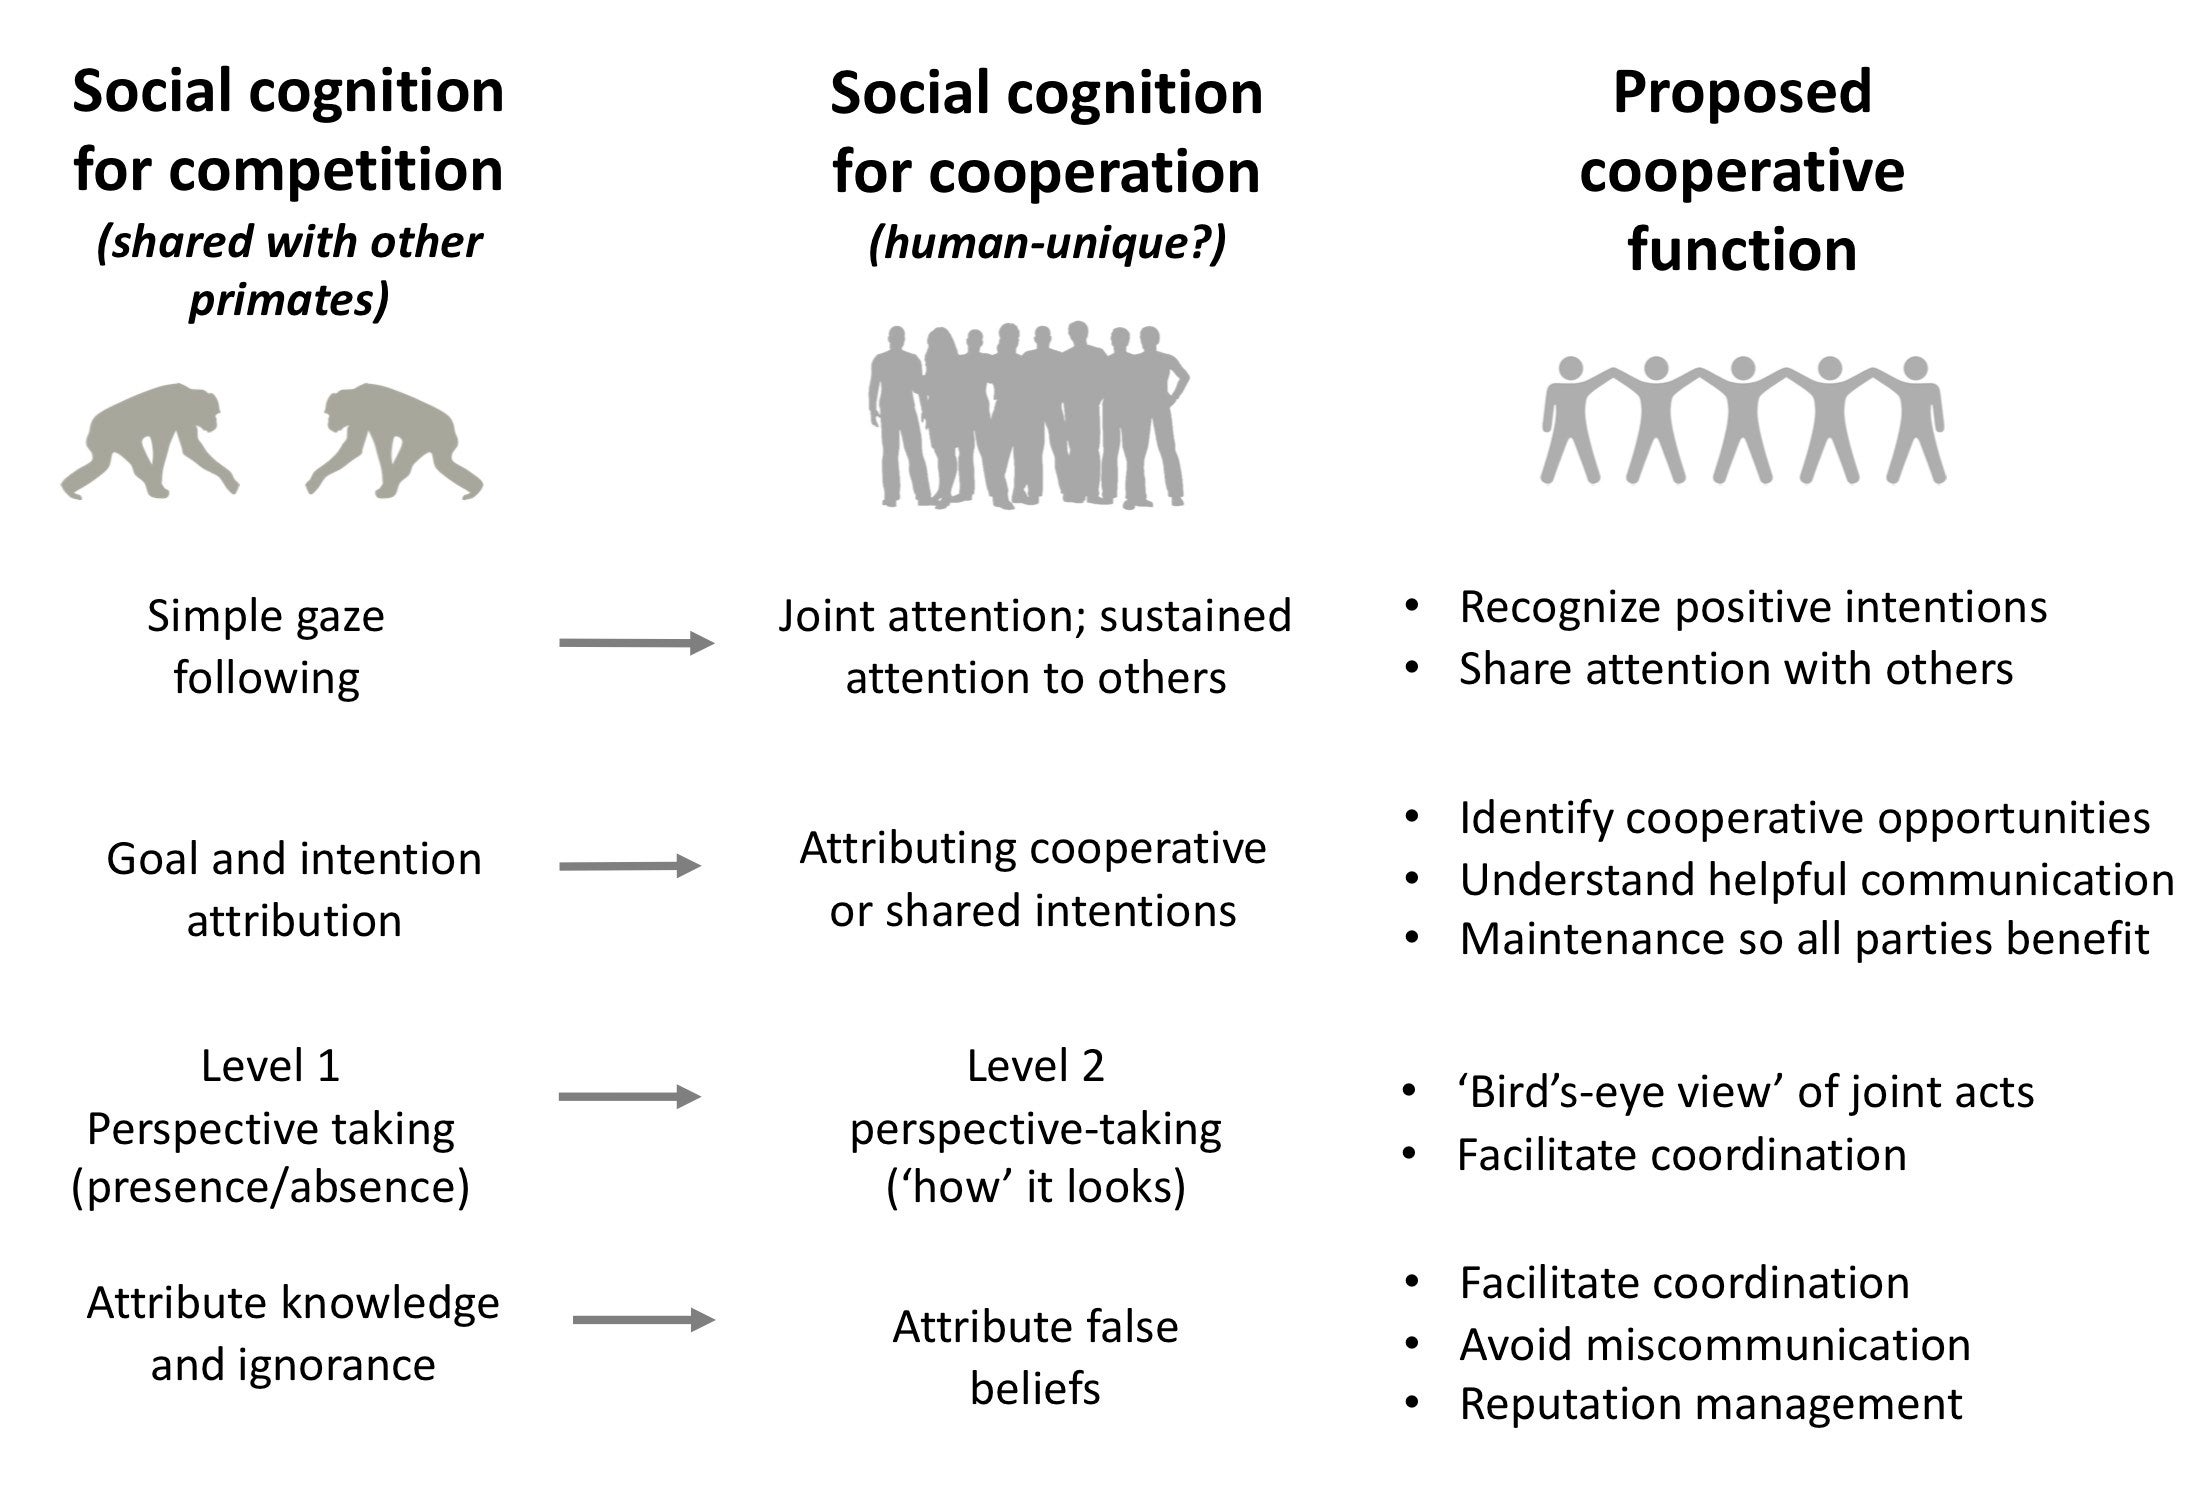 primate social behavior